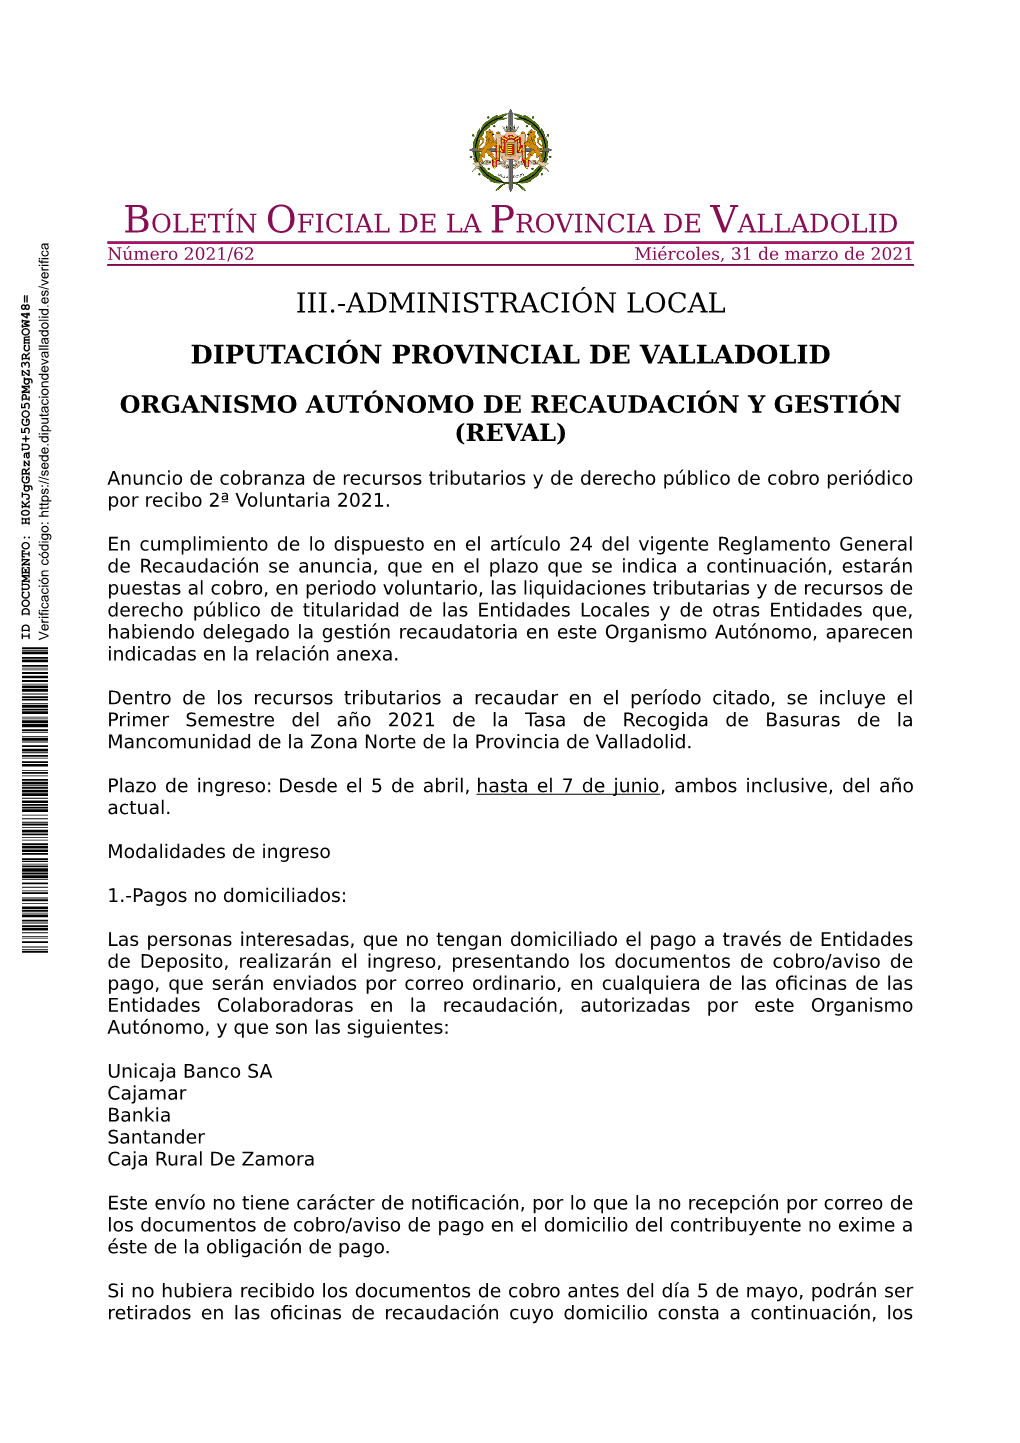 Iii.-Administración Local Diputación Provincial De Valladolid